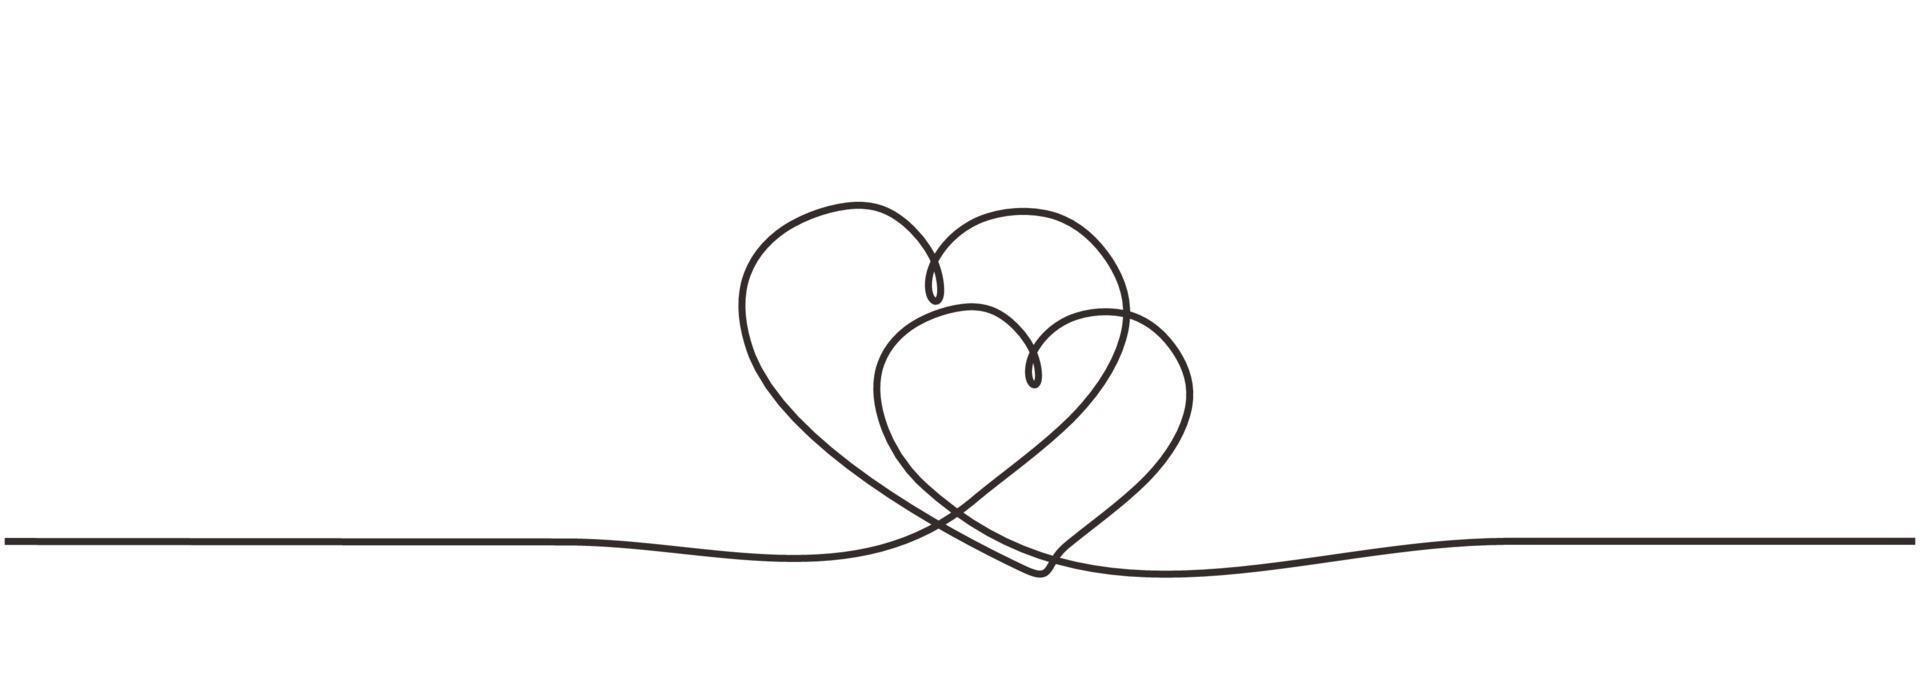 les coeurs d'amour signent un dessin continu d'une ligne. linéaire simple vecteur